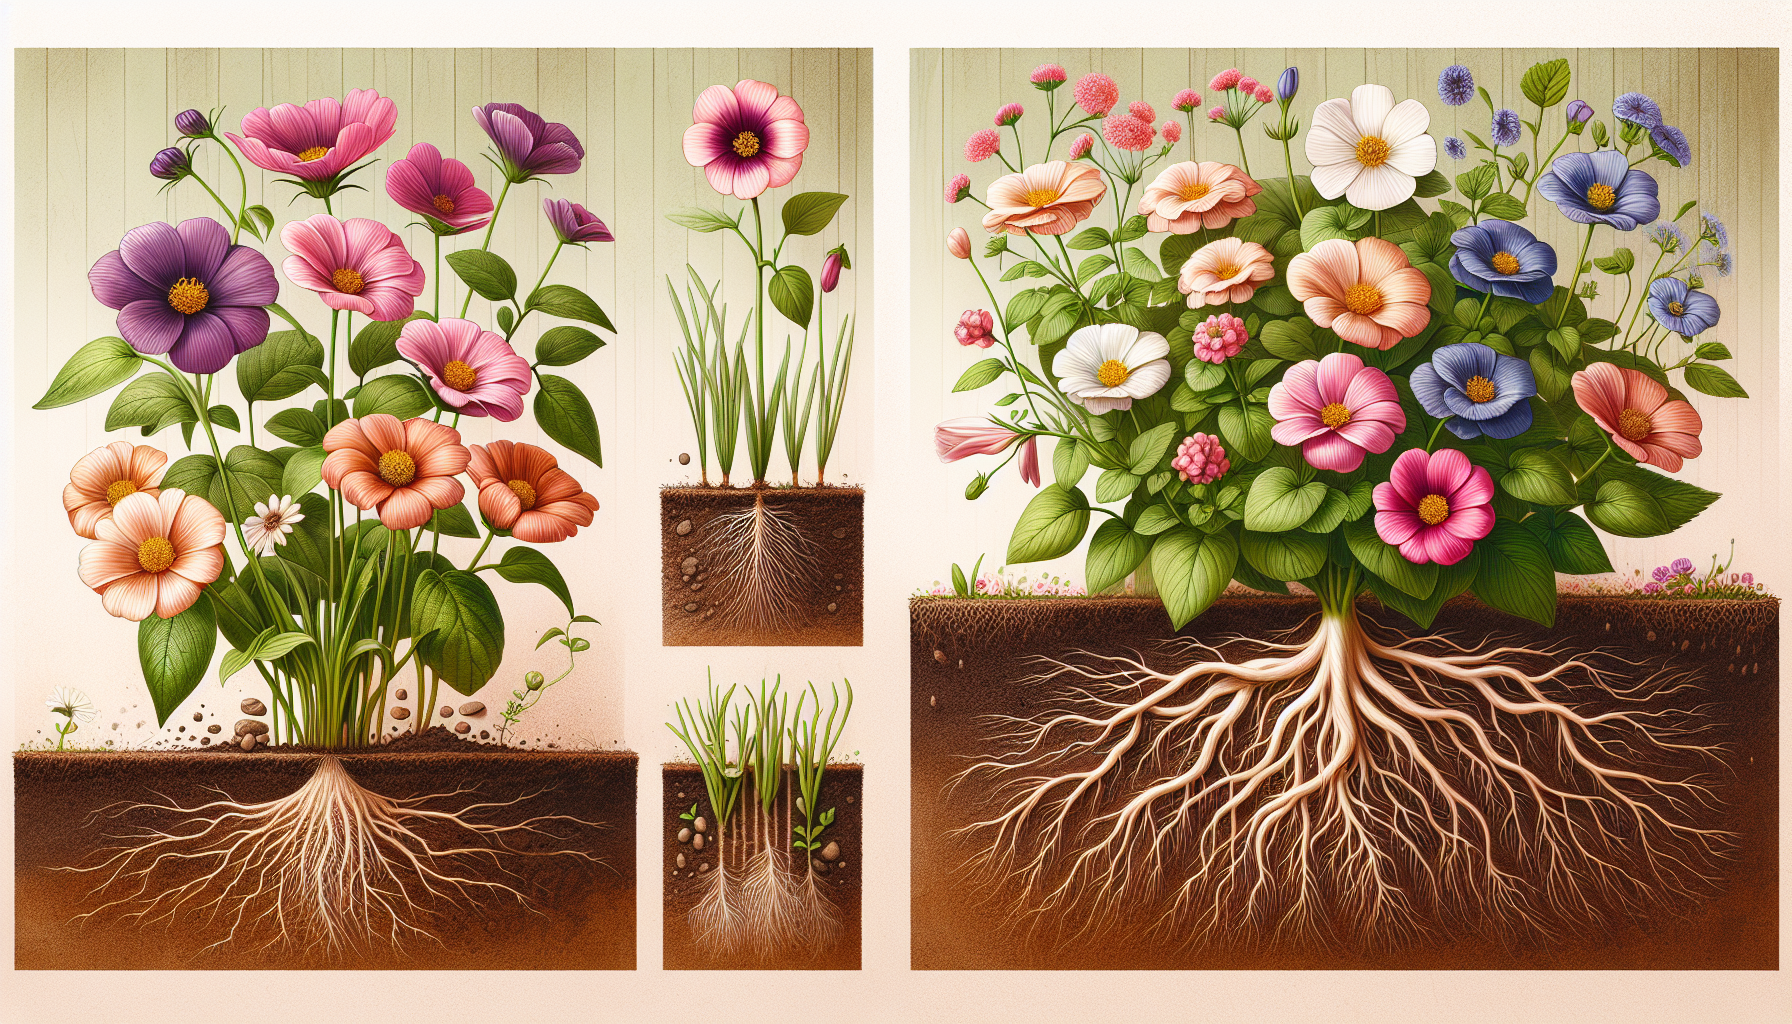 Як обрати ґрунт для квітів?